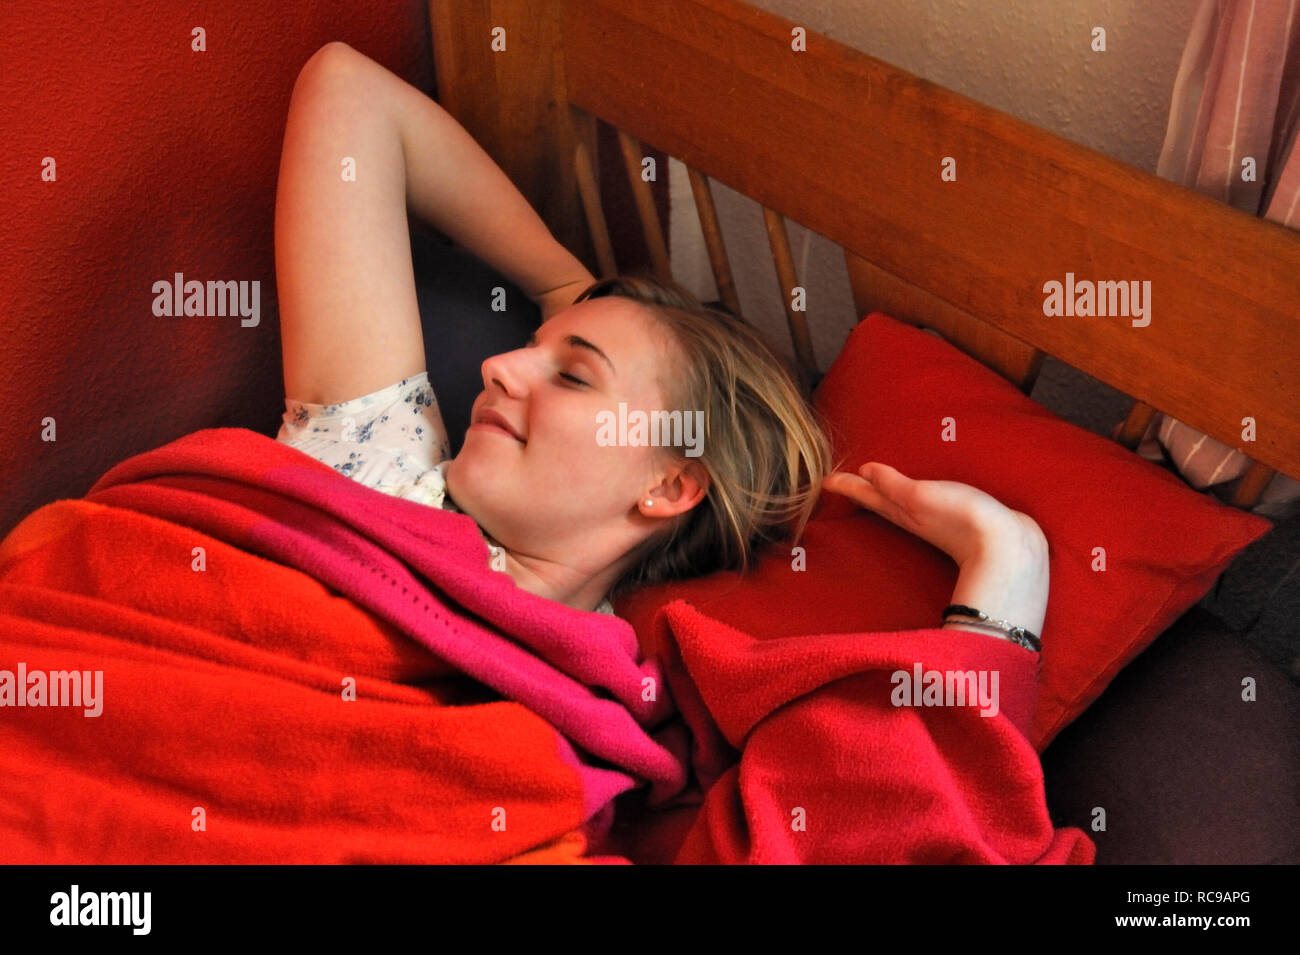 jugendliches Mädchen beim Aufwachen | young female teenager waking up Stock Photo